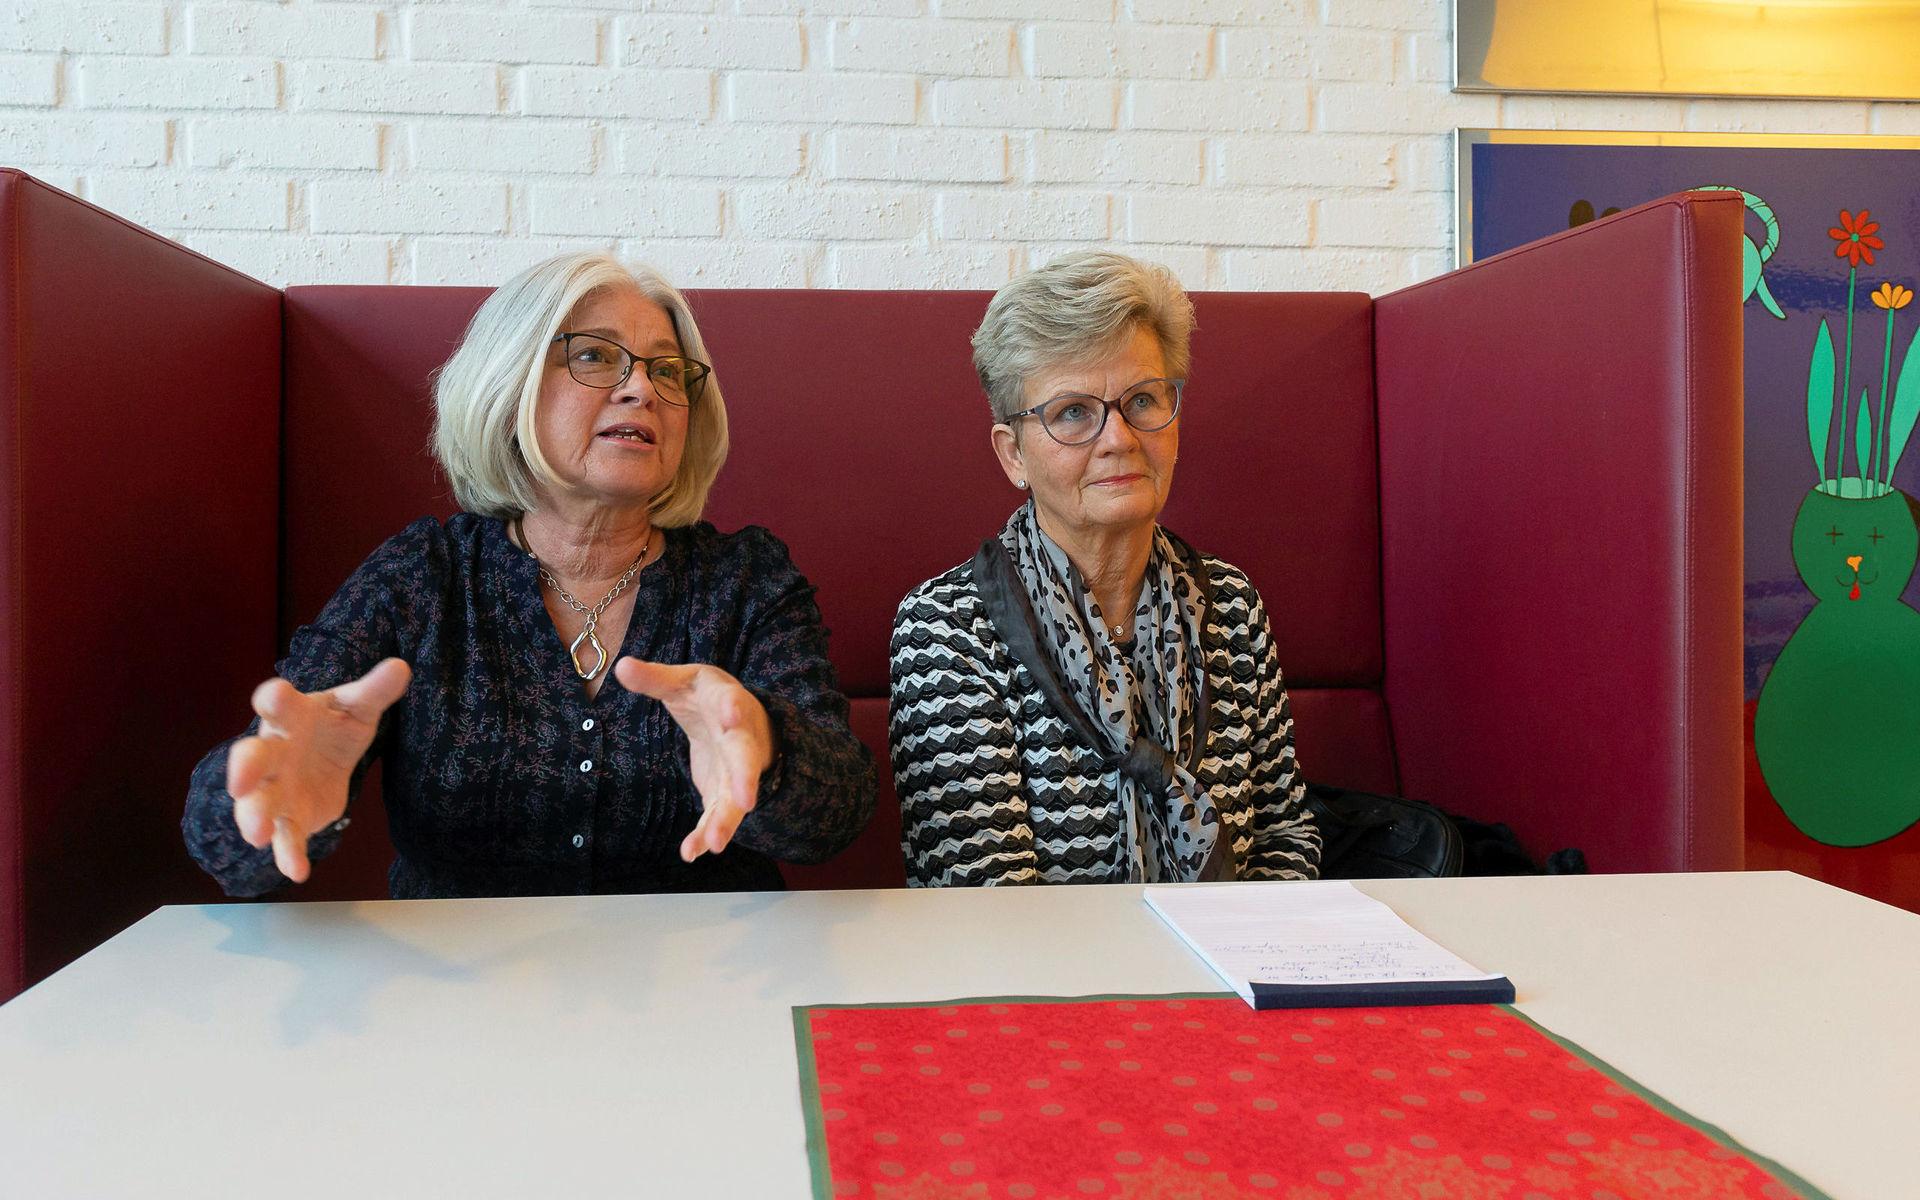 Marianne Börjesson och Britt Aronsson är två av Röda korsets sjukhusvärdar i Varberg. De håller sig ofta i närheten av tavlan där många vilsna patienter behöver hjälp.